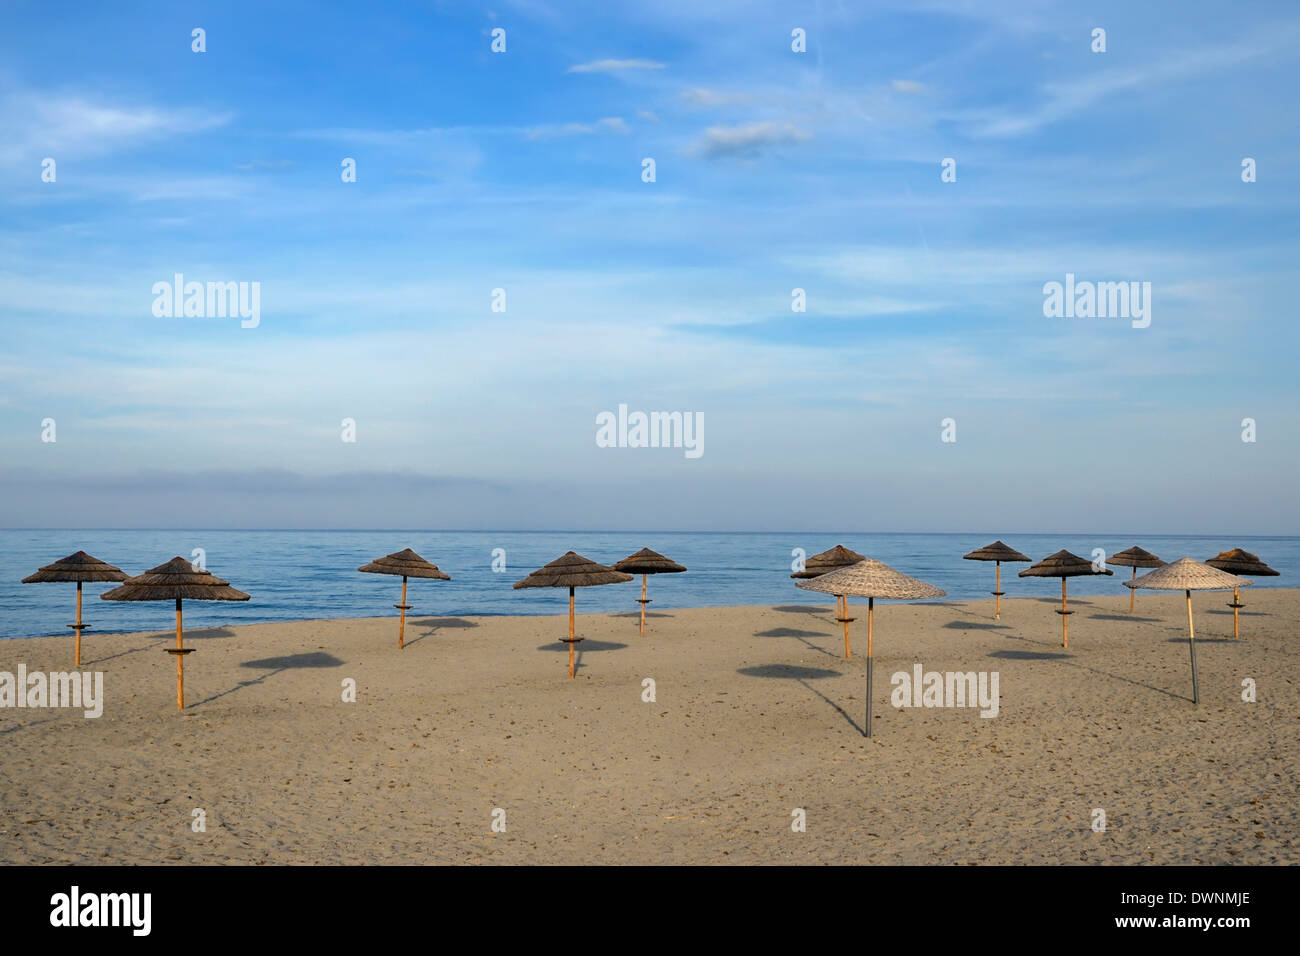 Sunshades on the beach, near Bastia, Corsica, France Stock Photo